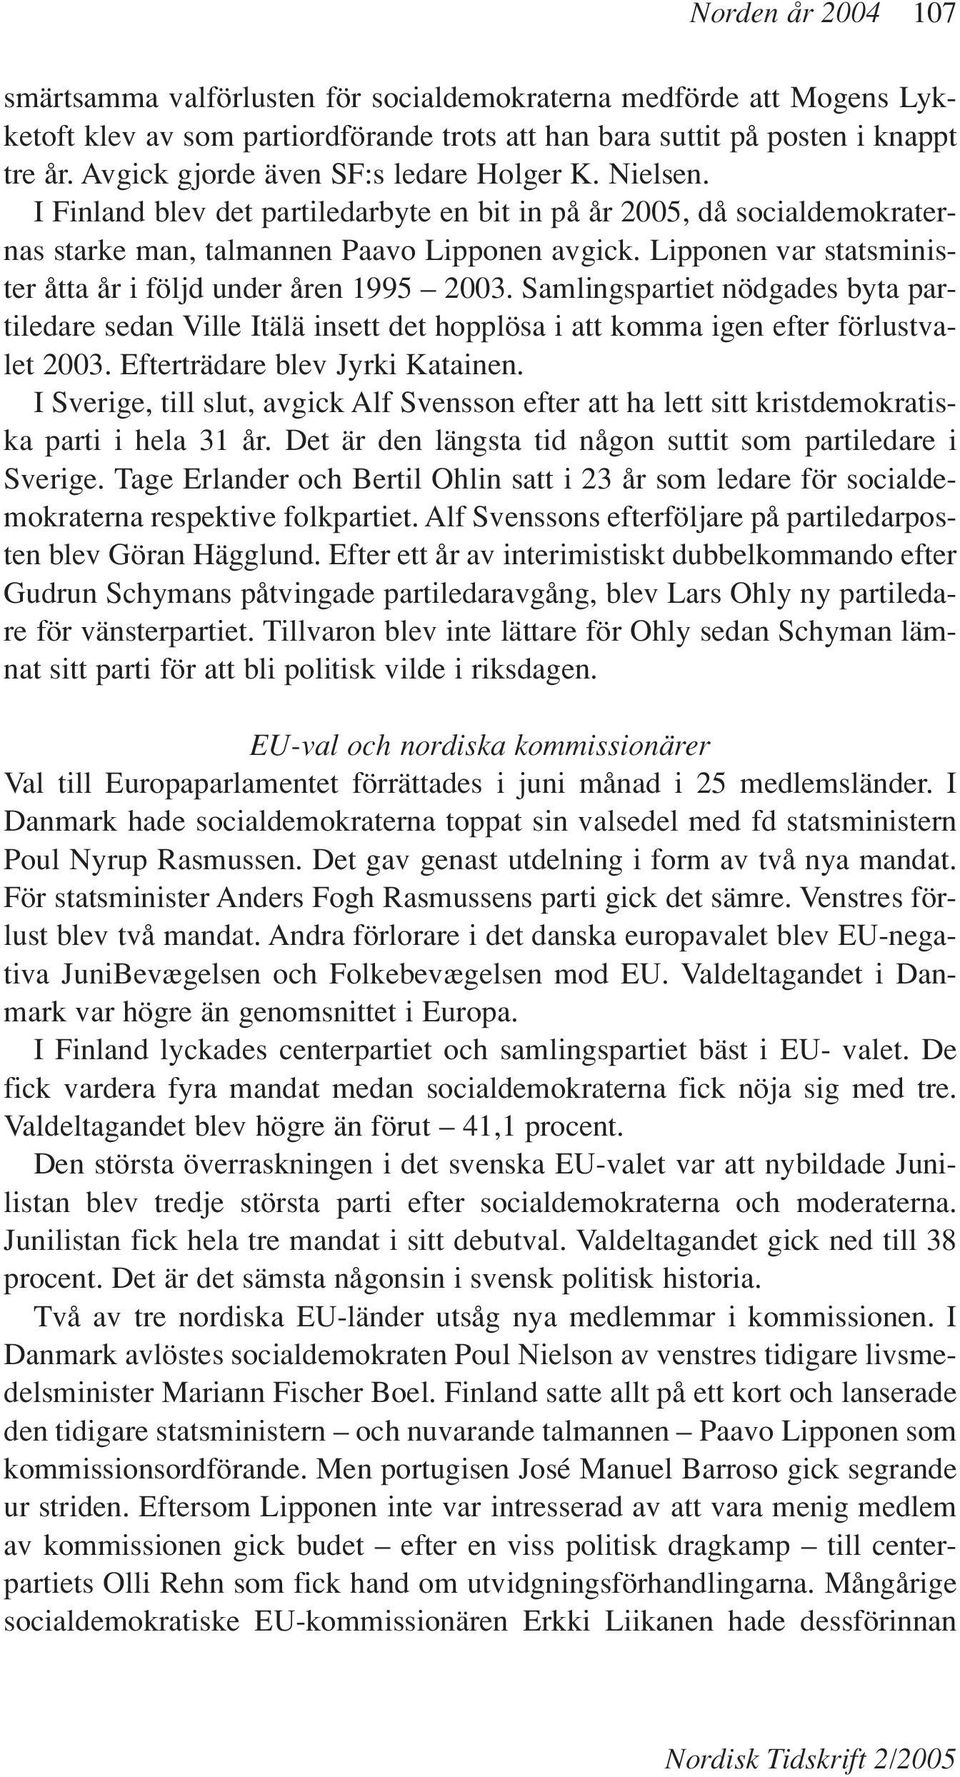 Lipponen var statsminister åtta år i följd under åren 1995 2003. Samlingspartiet nödgades byta partiledare sedan Ville Itälä insett det hopplösa i att komma igen efter förlustvalet 2003.